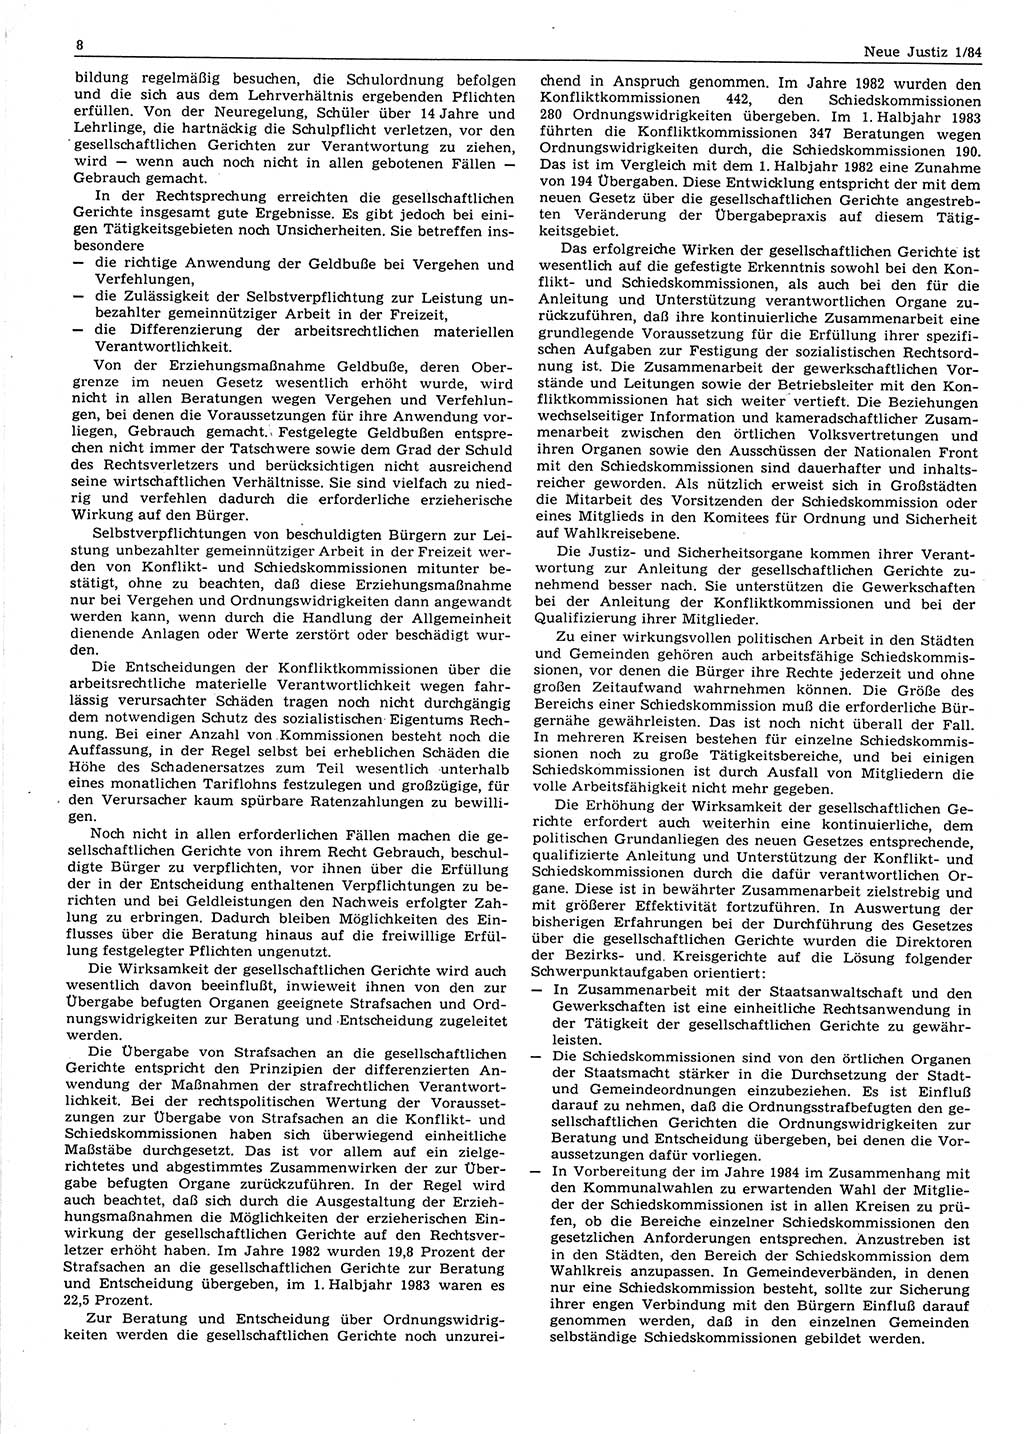 Neue Justiz (NJ), Zeitschrift für sozialistisches Recht und Gesetzlichkeit [Deutsche Demokratische Republik (DDR)], 38. Jahrgang 1984, Seite 8 (NJ DDR 1984, S. 8)